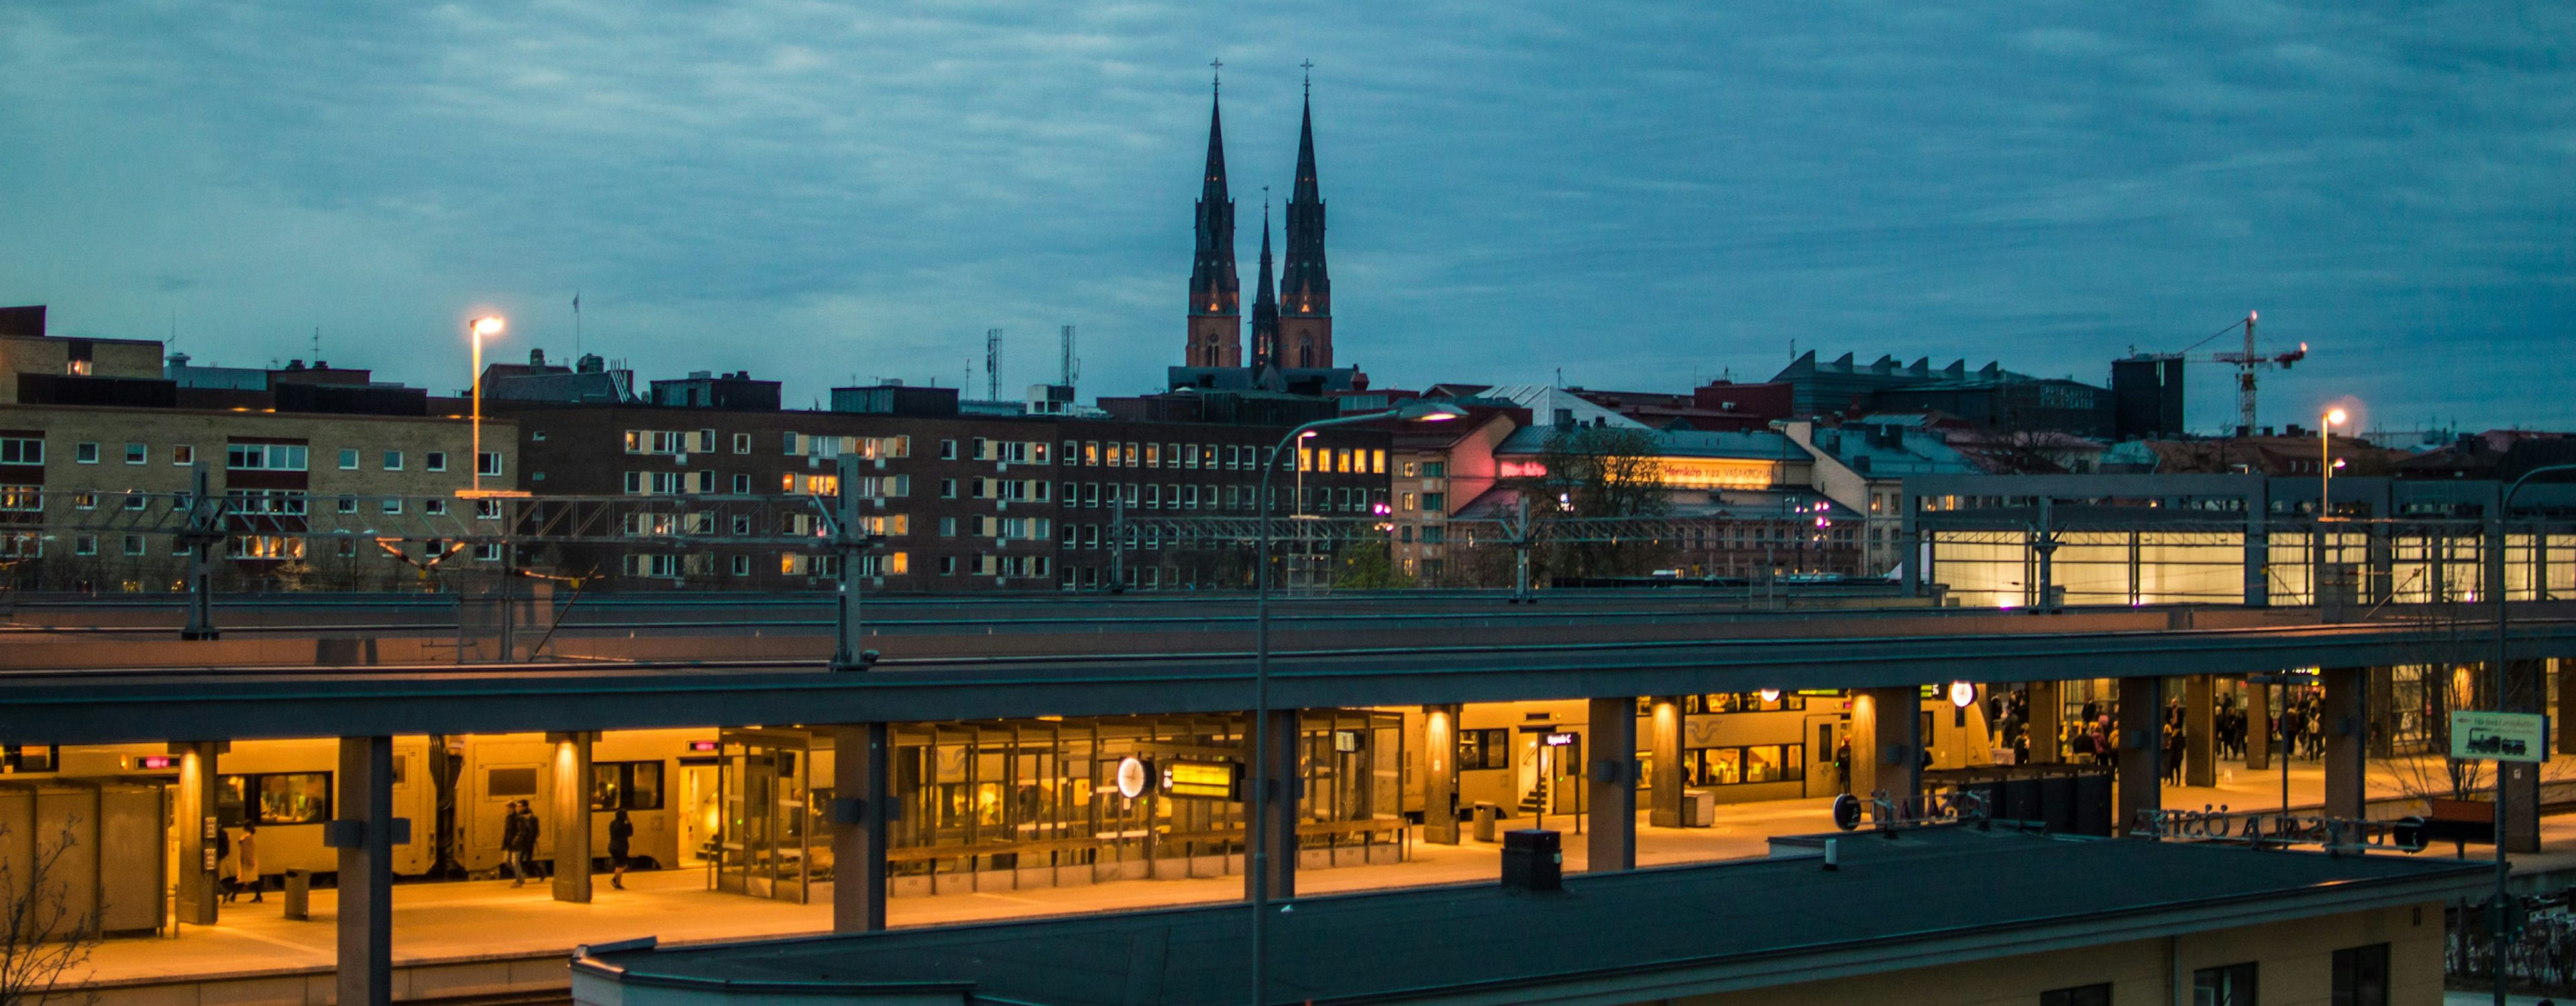 Kvällsvy över Uppsala med upplyst tågstation i förgrunden och den ikoniska Uppsala domkyrka i bakgrunden